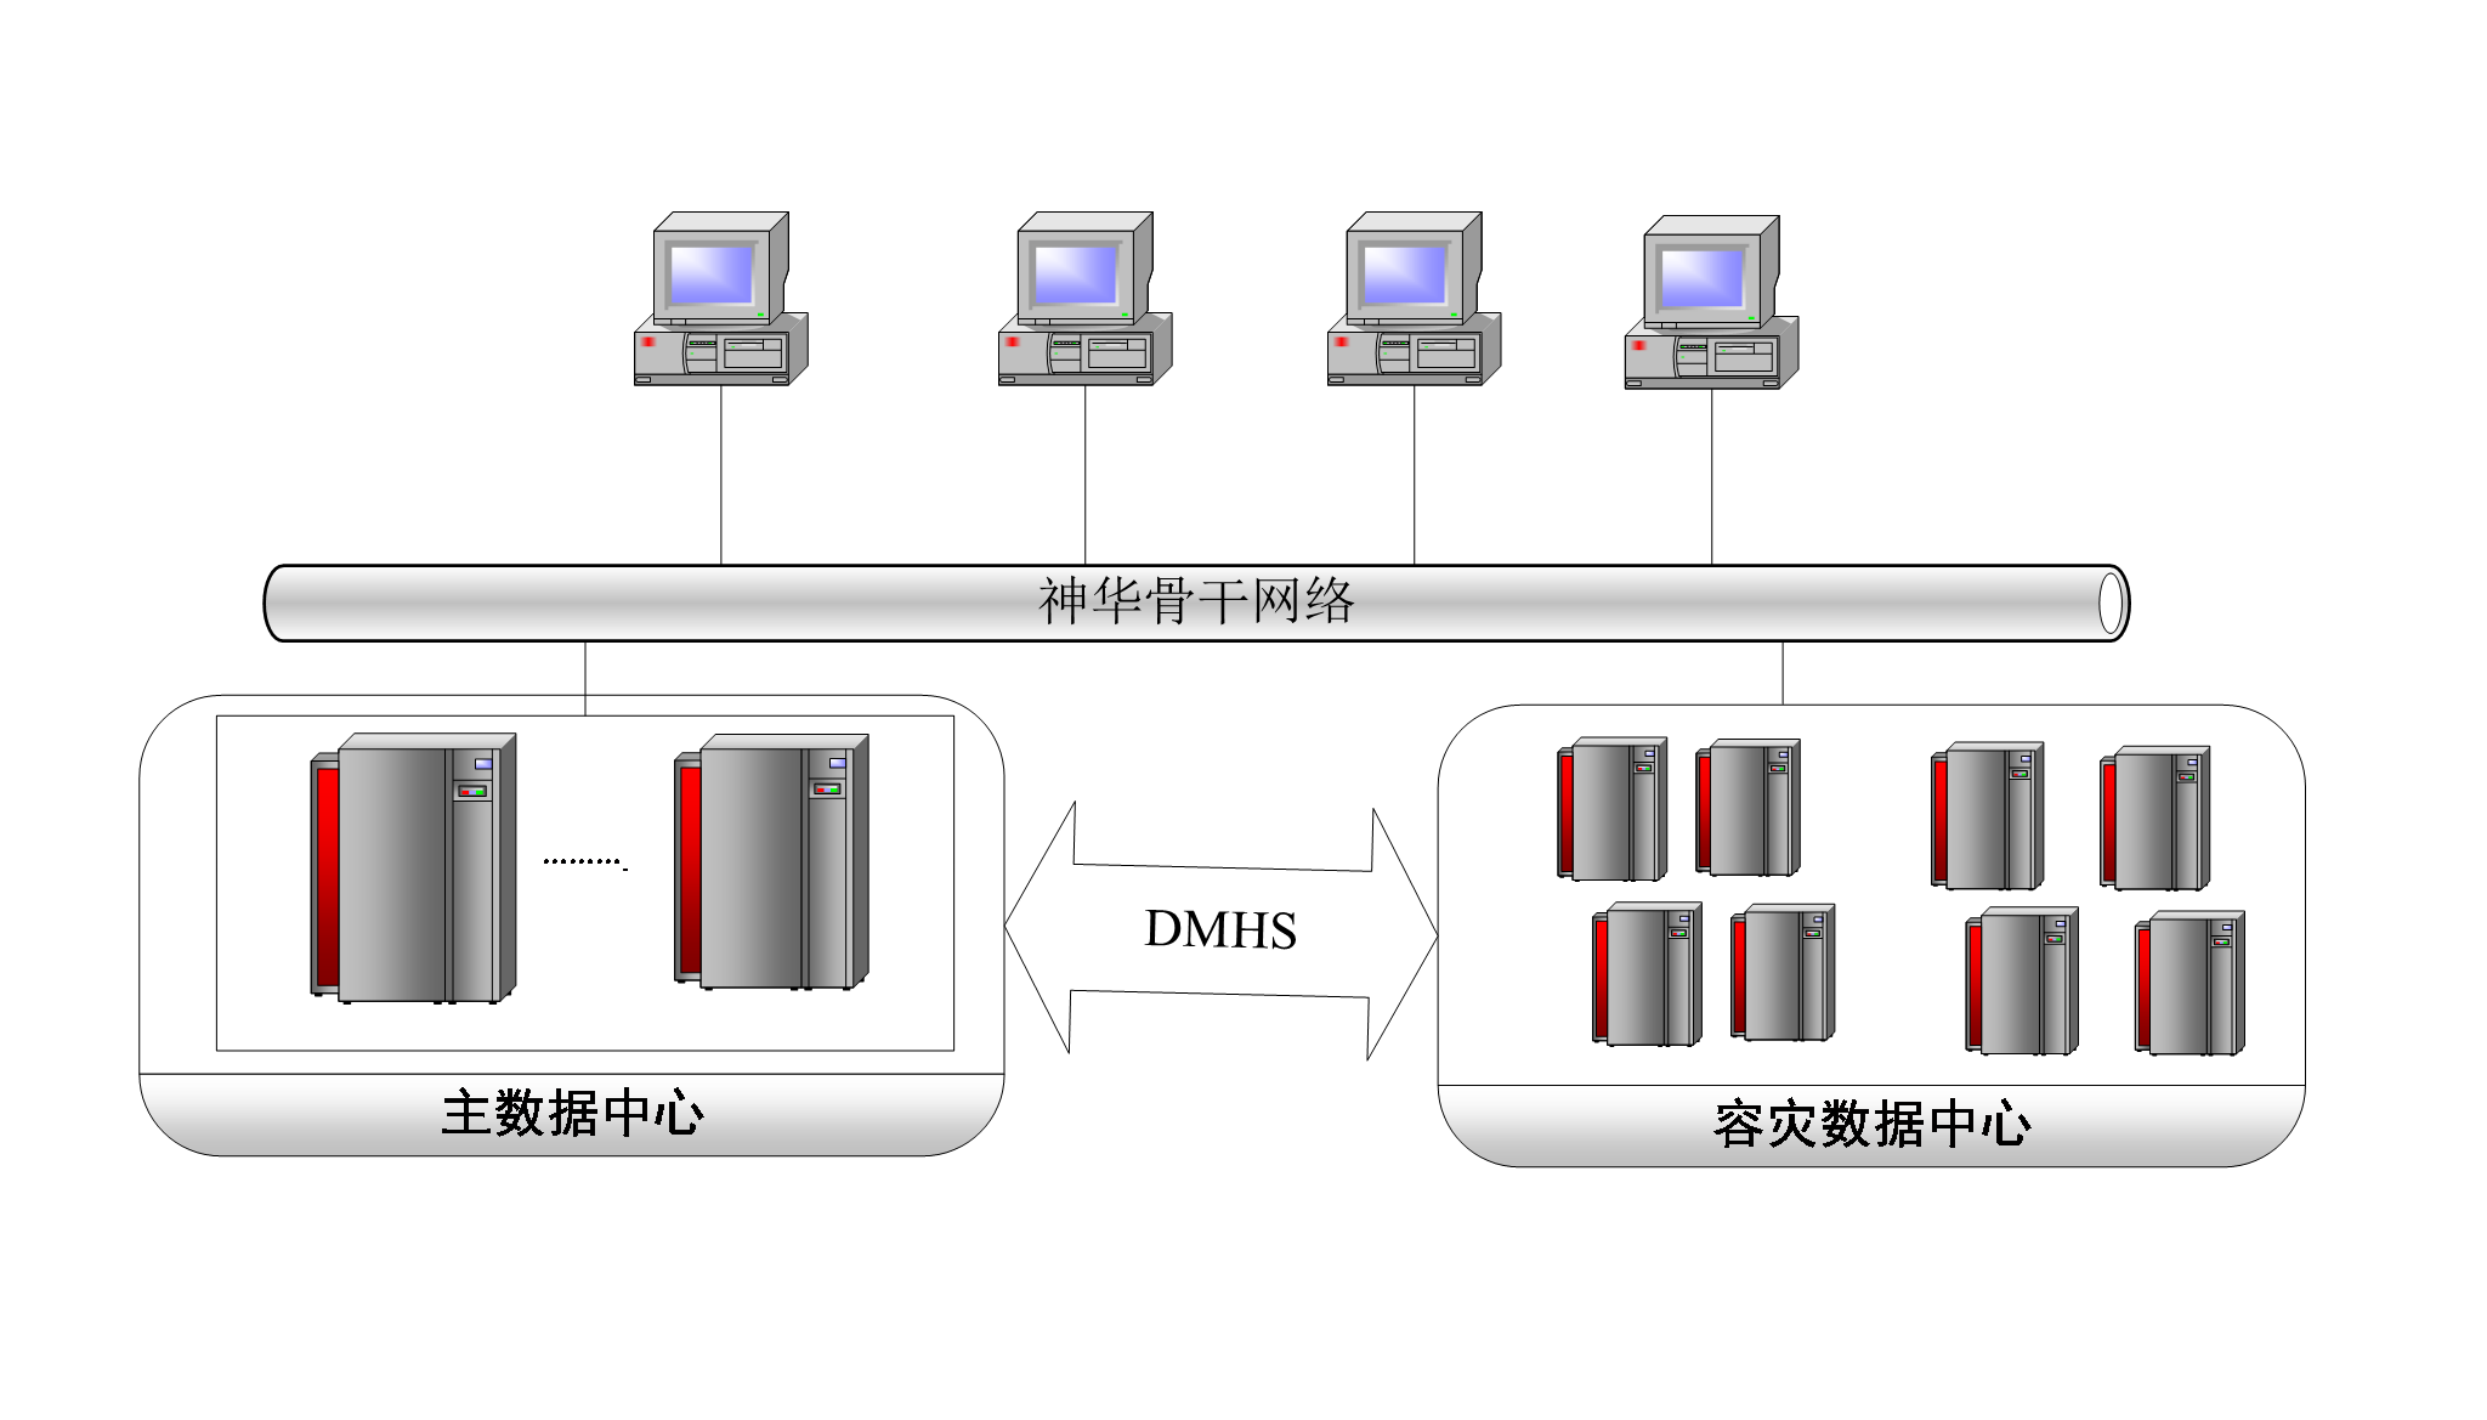 神华集团数据库国产化替代工程（应用产品：DM7数据守护、DMETL、DMHS）